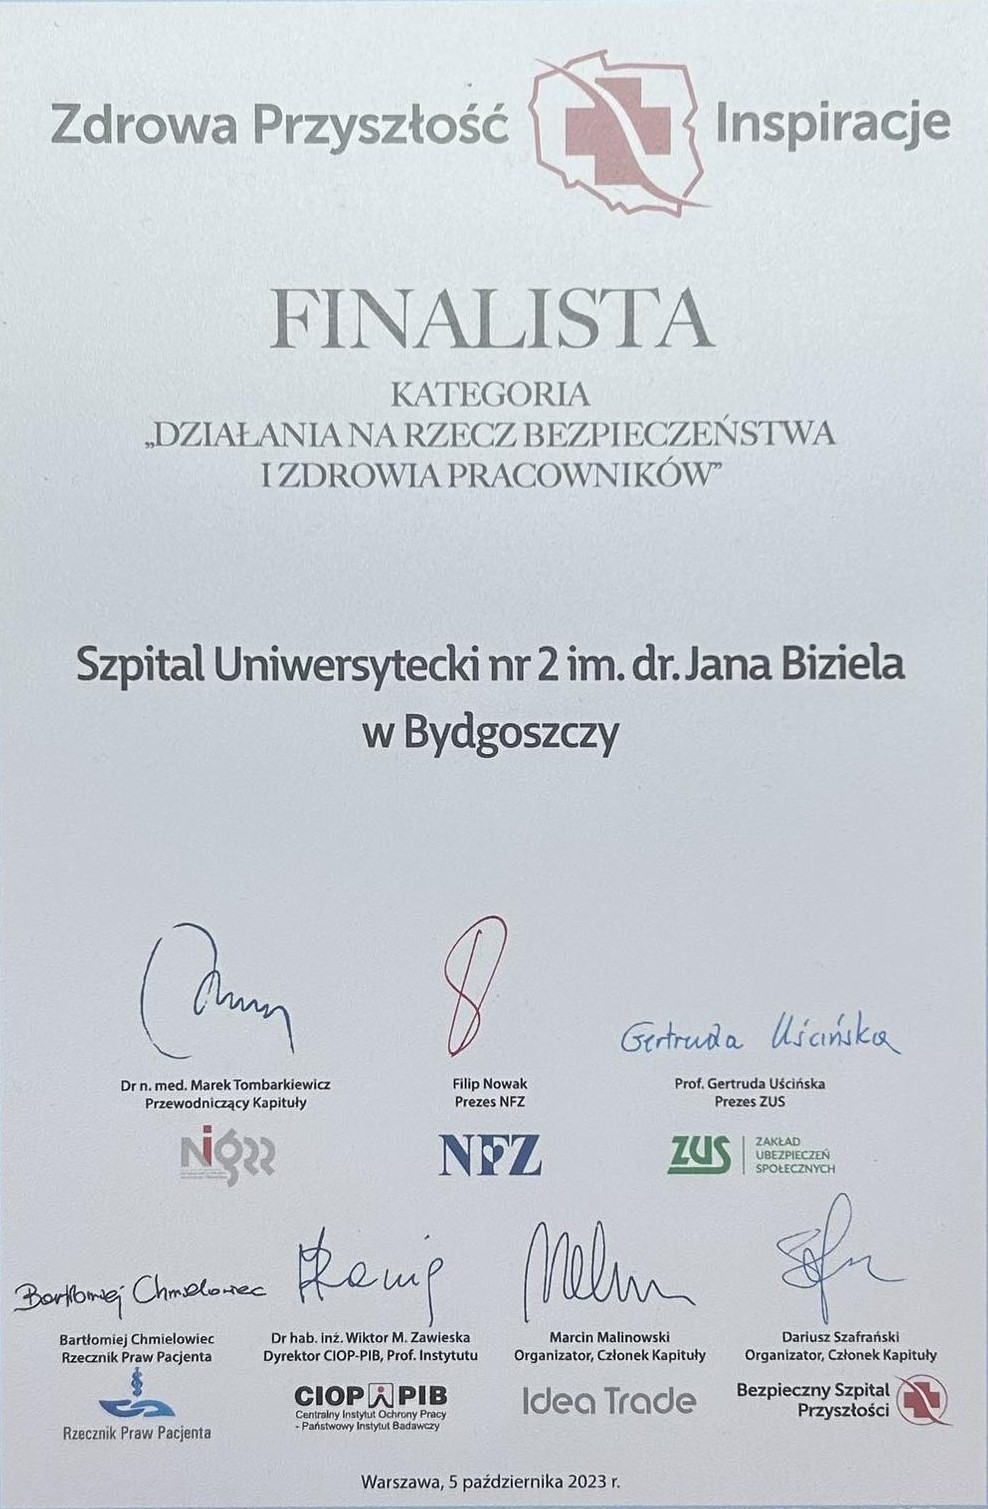 Szpital Uniwersytecki nr 2 im. dr. Jana Biziela w Bydgoszczy wśród finalistów szóstej edycji konkursu 